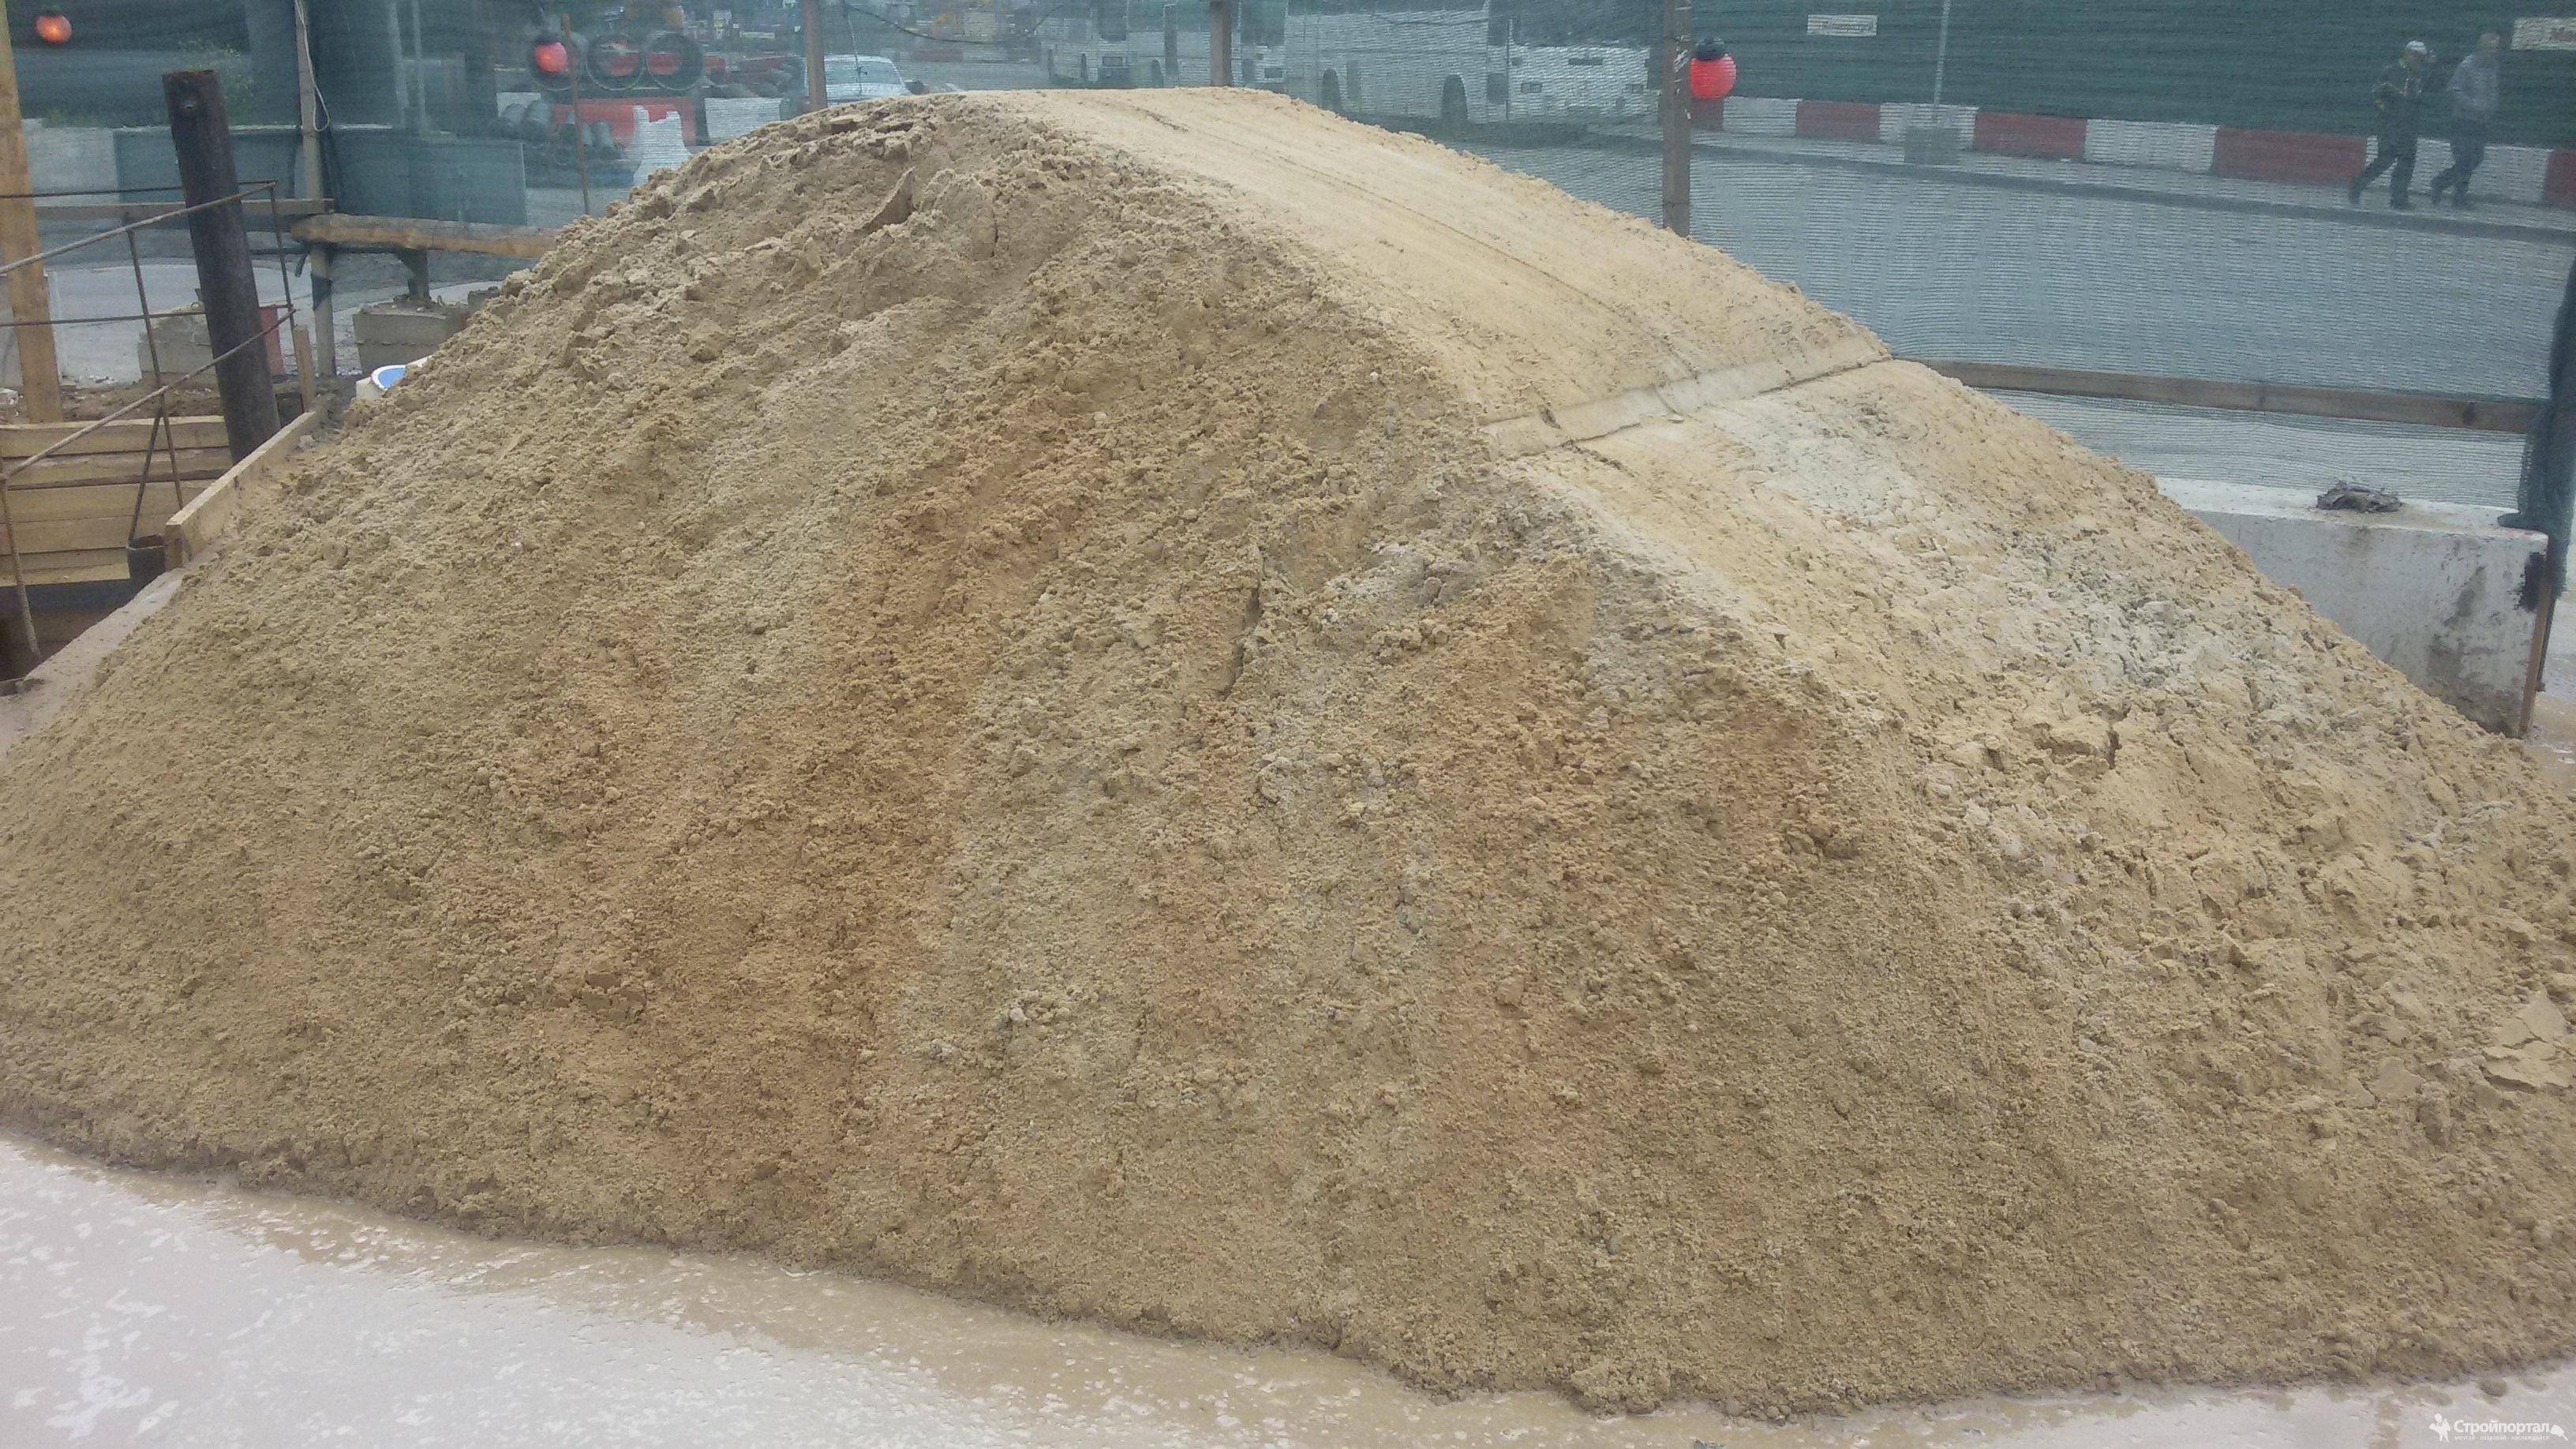 Выбираем песок для бетона - карьерный или речной? характеристики и свойства видов песка в кратком обзоре.